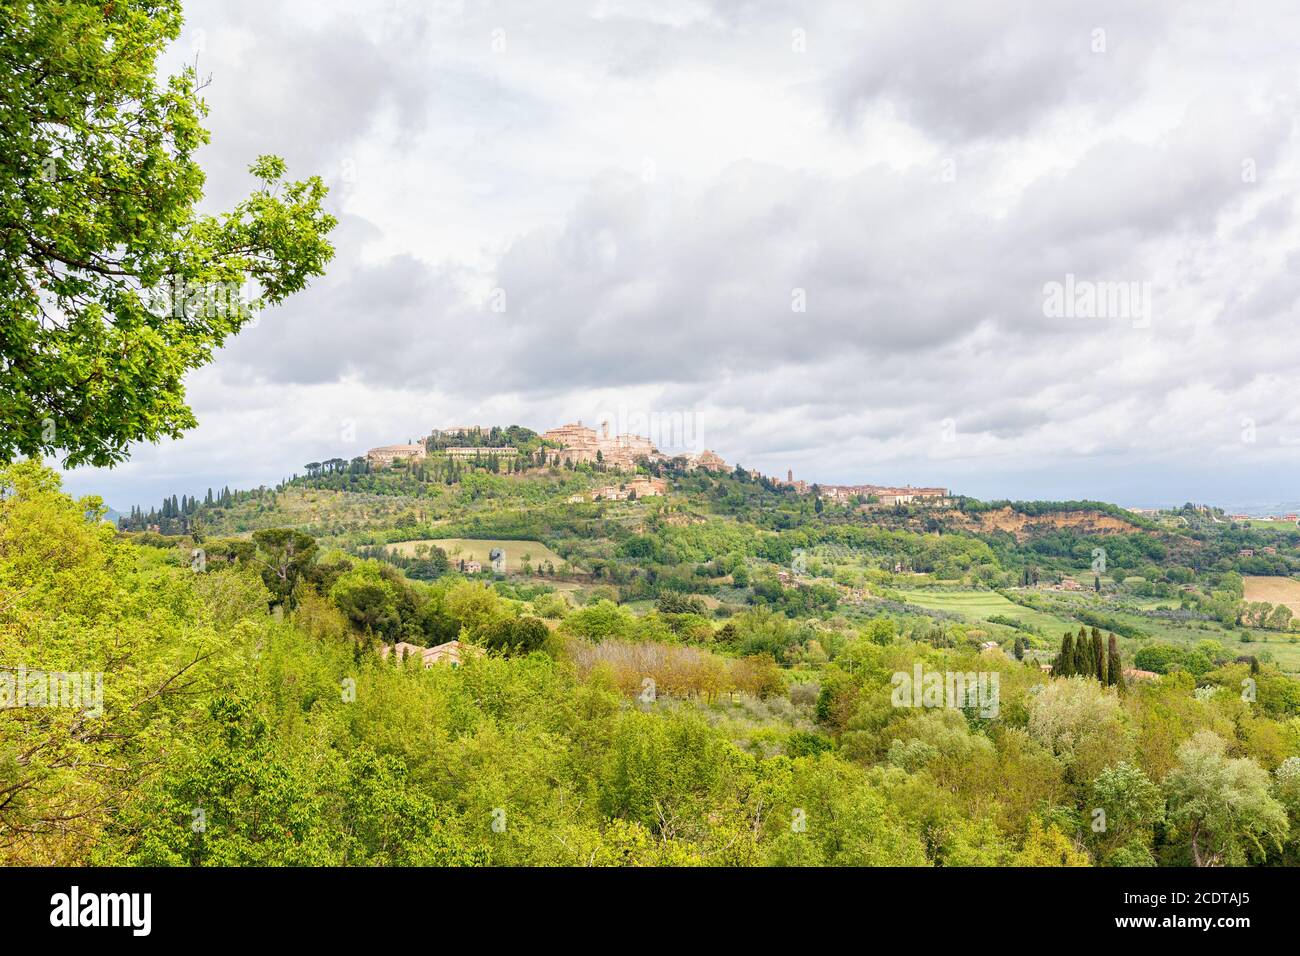 Vue toscane avec un vieux village sur une colline la campagne Banque D'Images